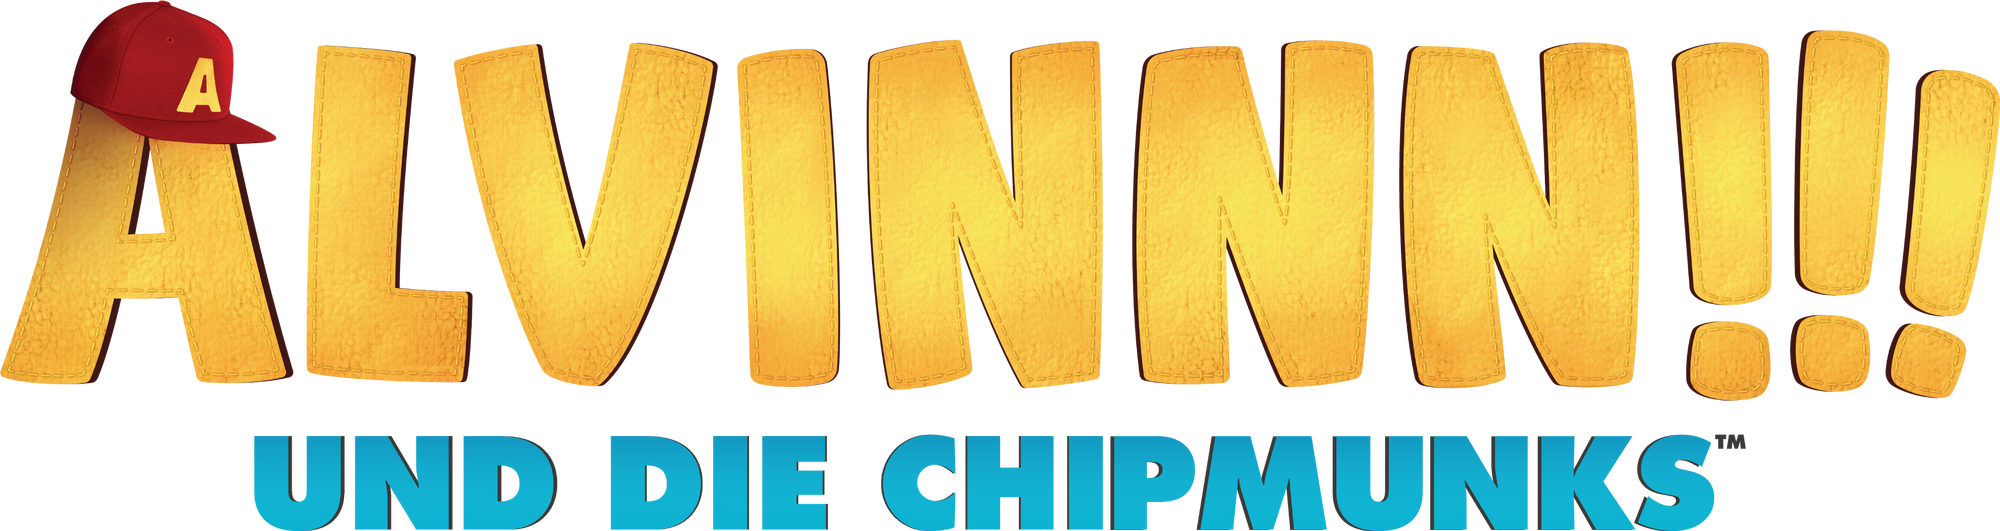 Alvinnn Und Die Chipmunks Toggo Wiki Fandom